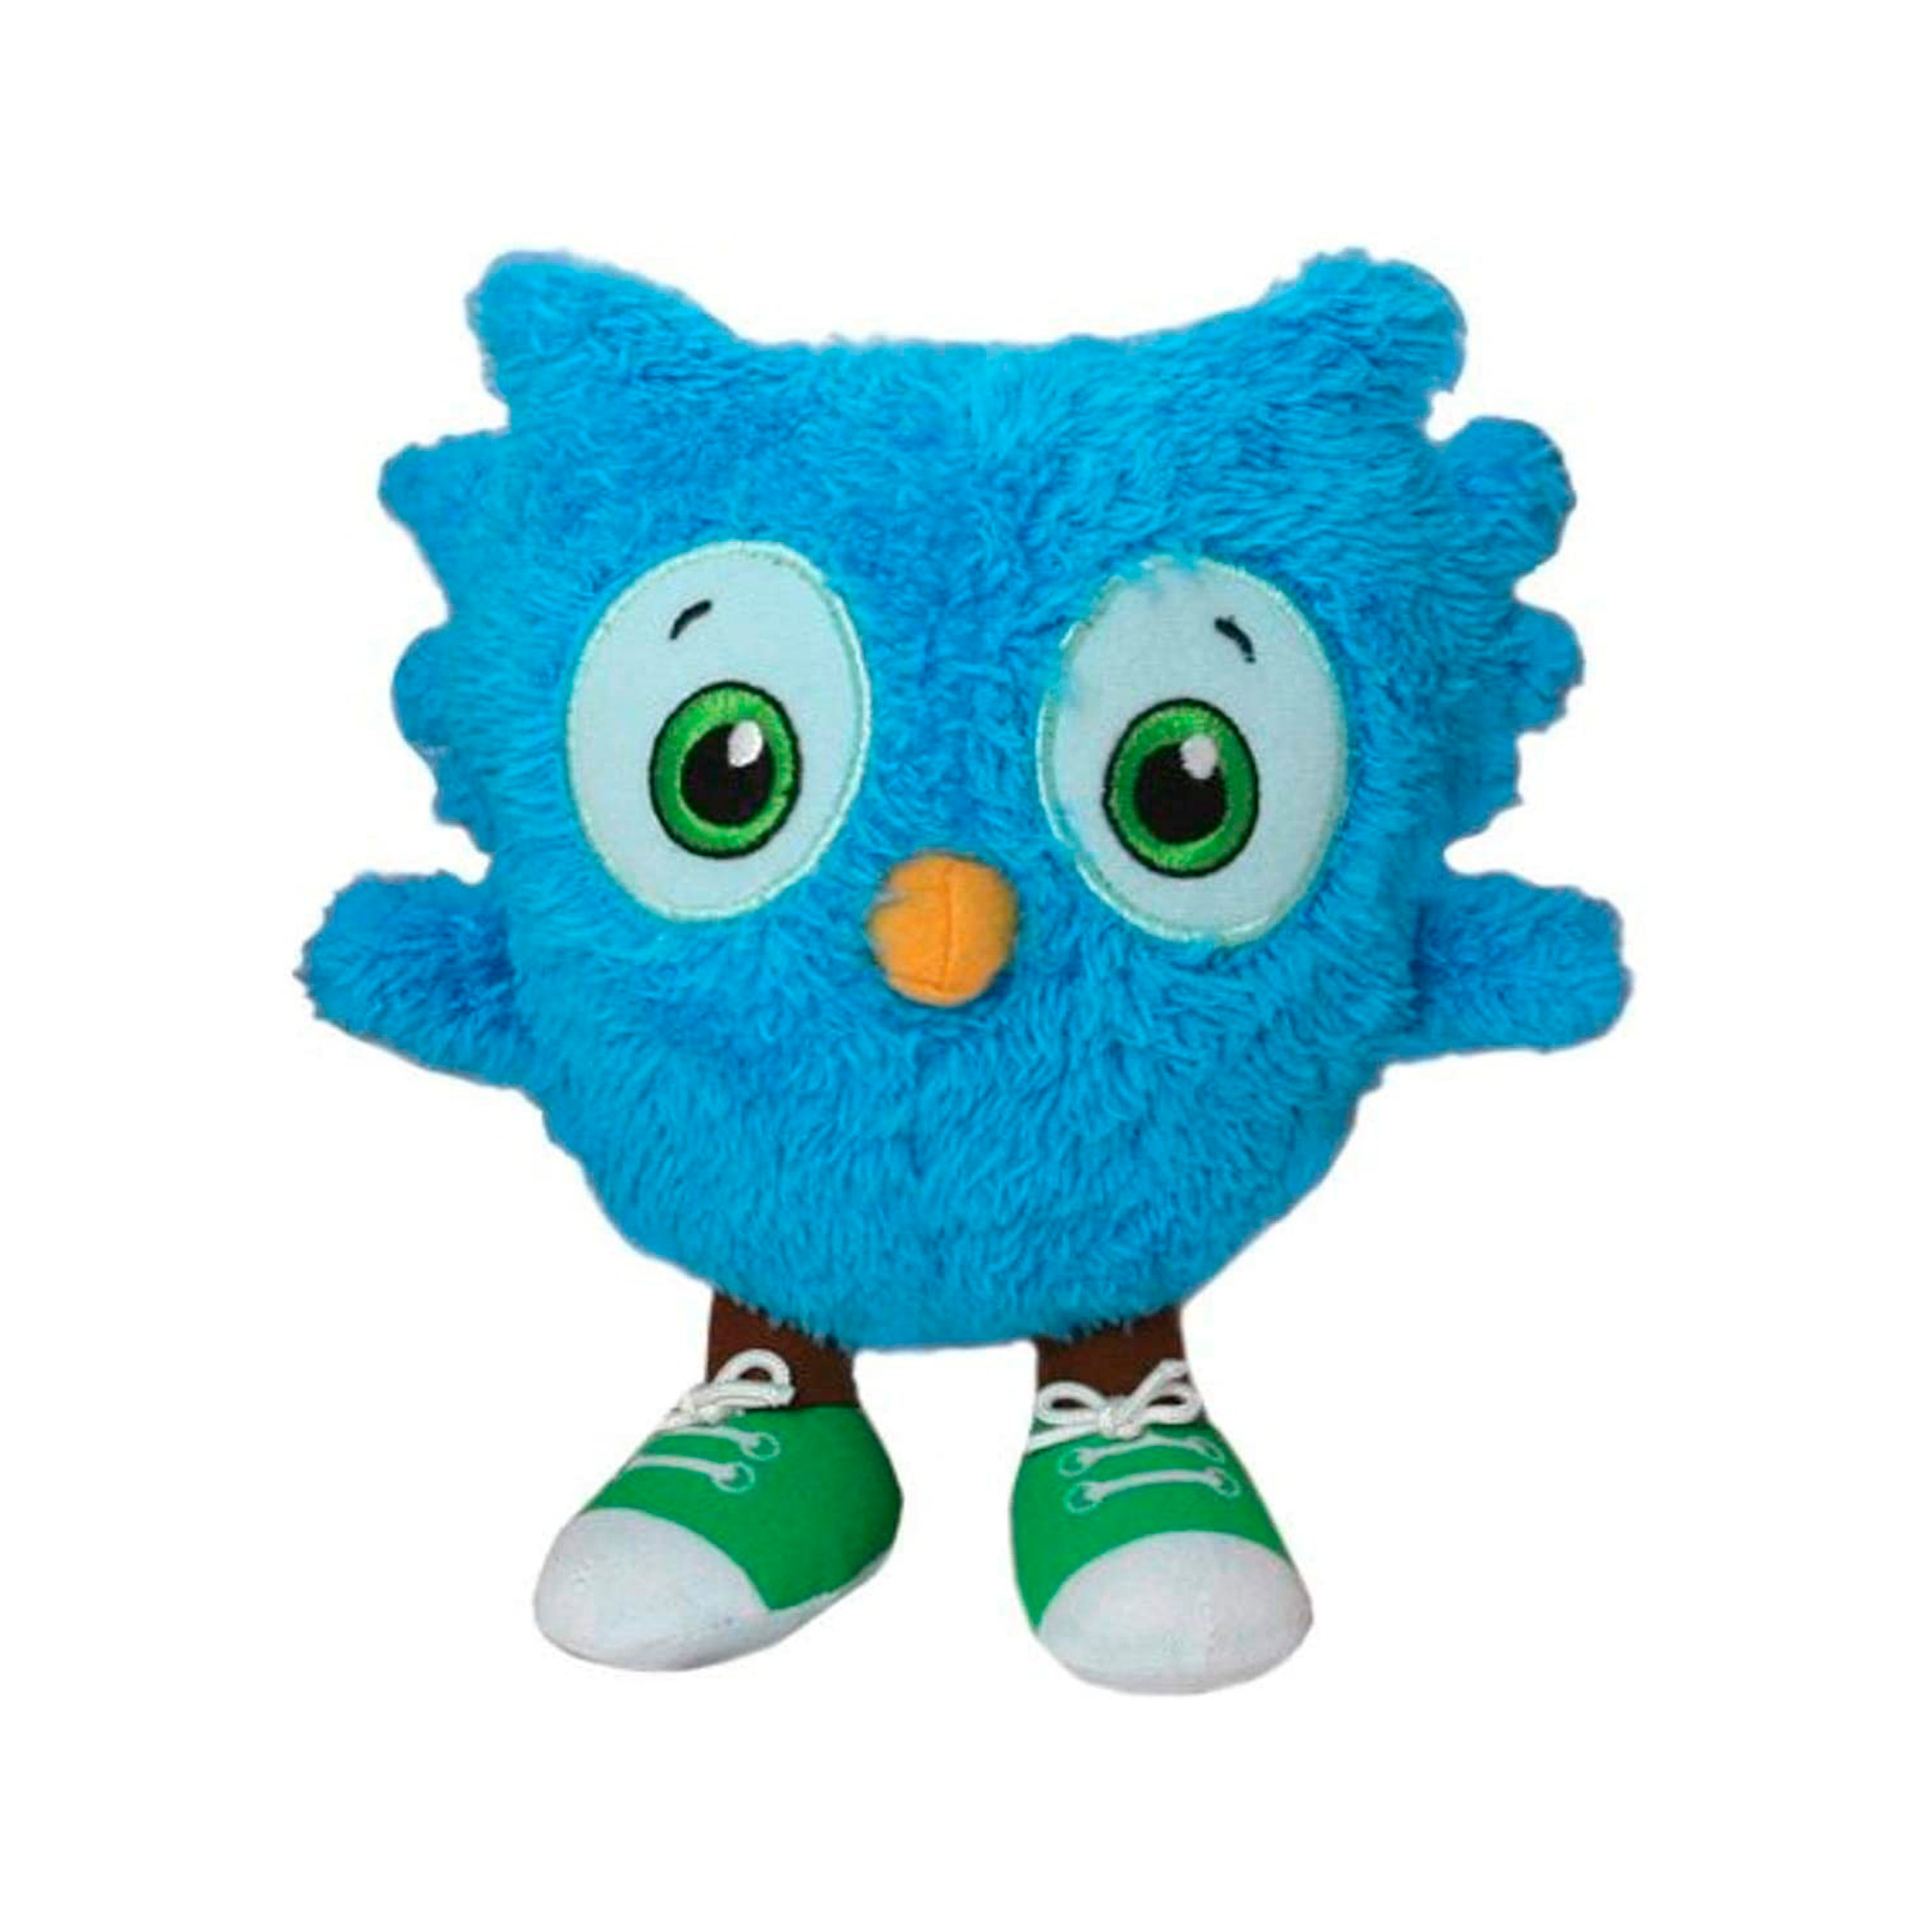 O The Owl Mini Plush